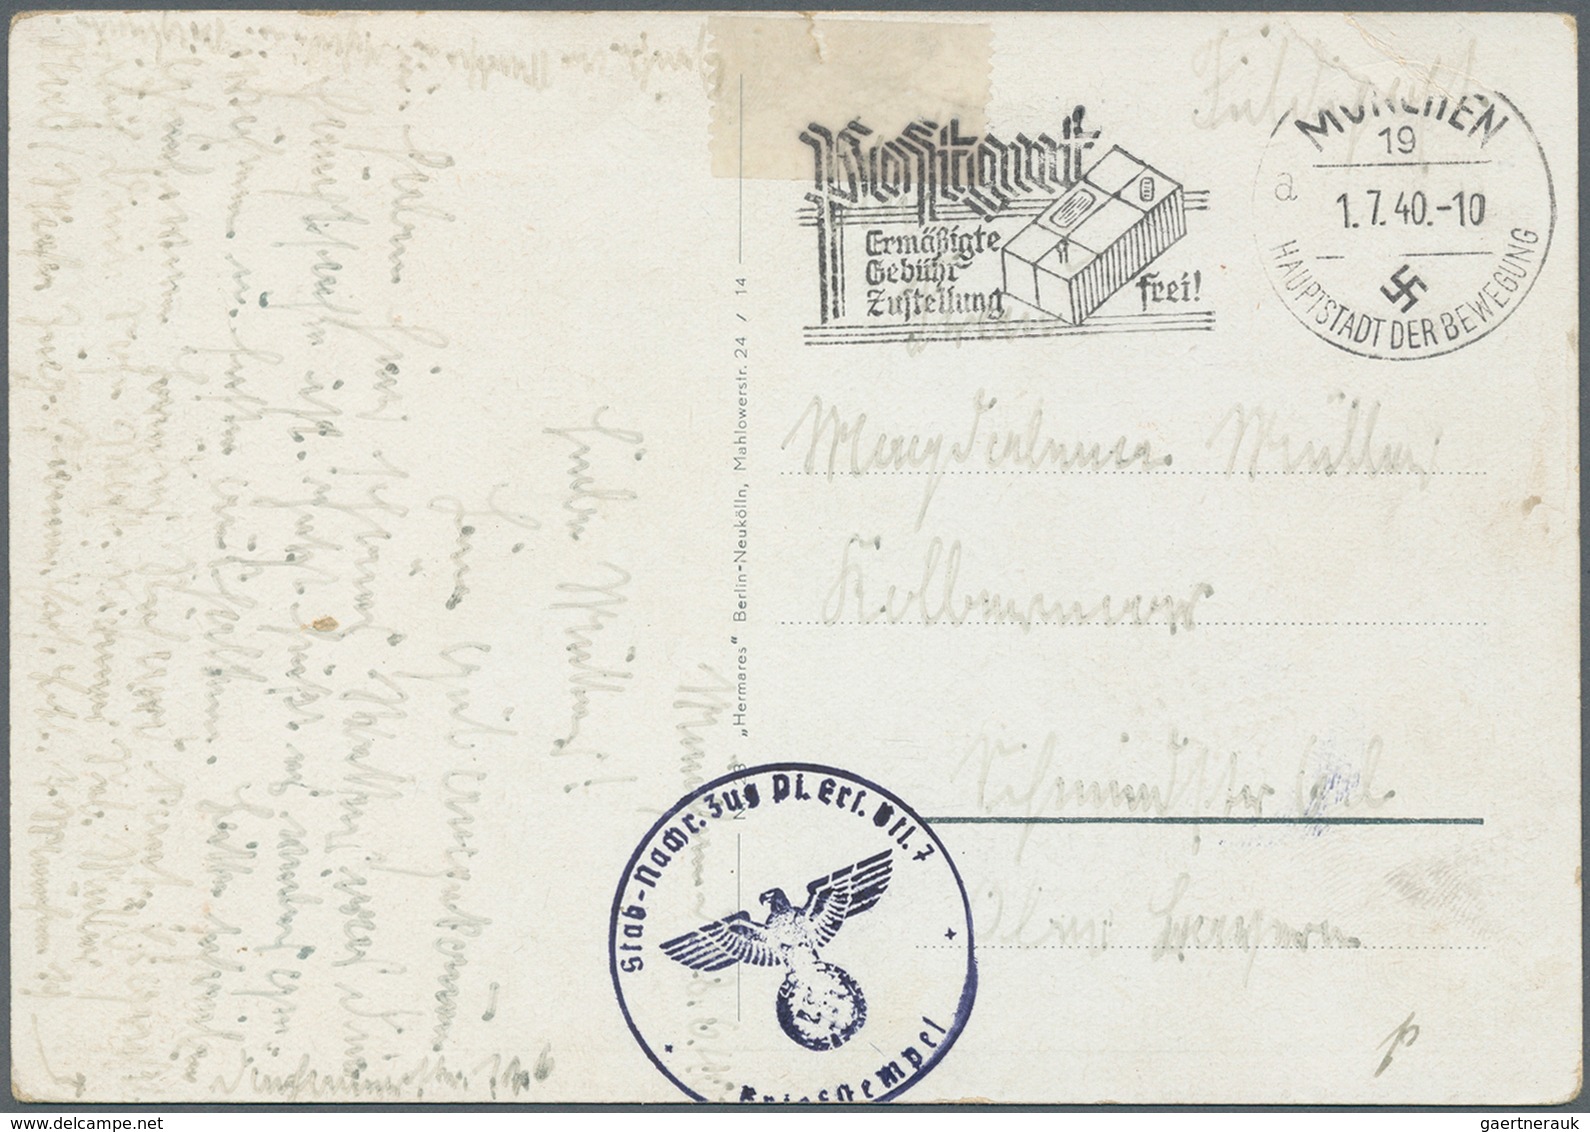 31776 Deutsches Reich - Ganzsachen: 1920/1944 (ca.), Posten mit über 150 gelaufenen Postkarten Deutsches R